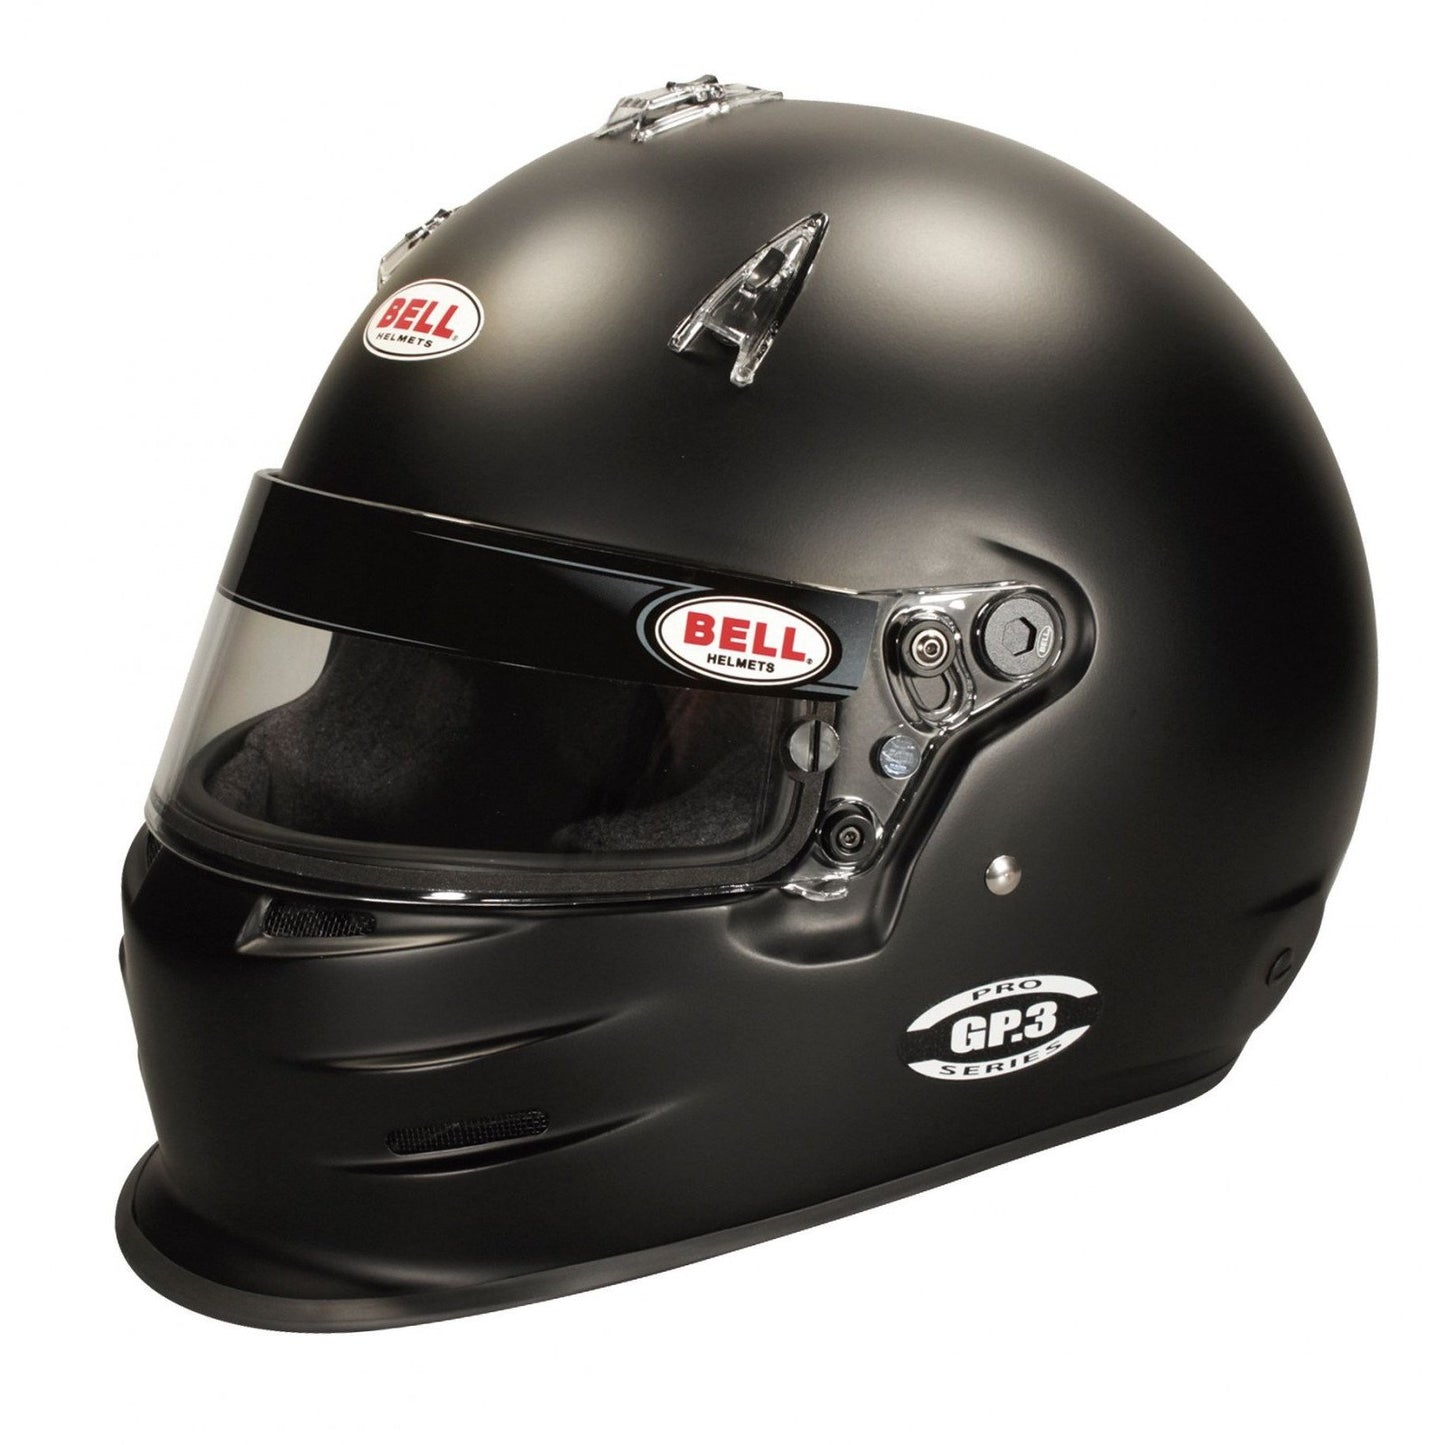 Bell GP3 Black Racing Helmet - 61 cm-BEL-1313015-Helmets-Bell-JDMuscle